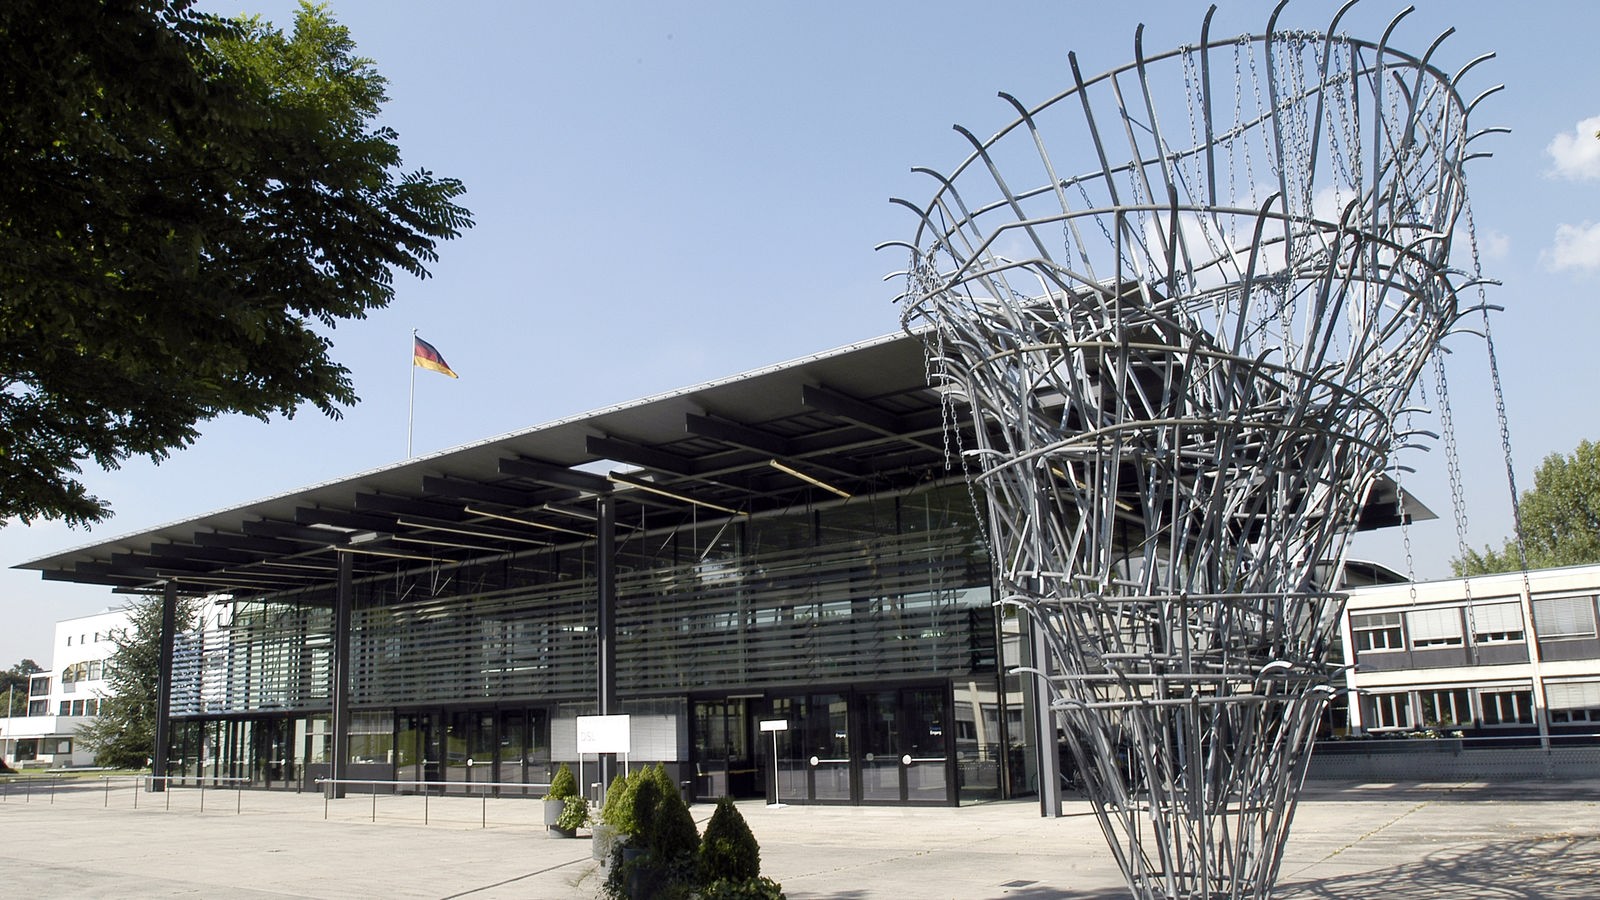 Blick auf das IKBB (Internationales Kongresszentrum Bundeshaus Bonn) im ehemaligen Gebäude Deutscher Bundestag in Bonn